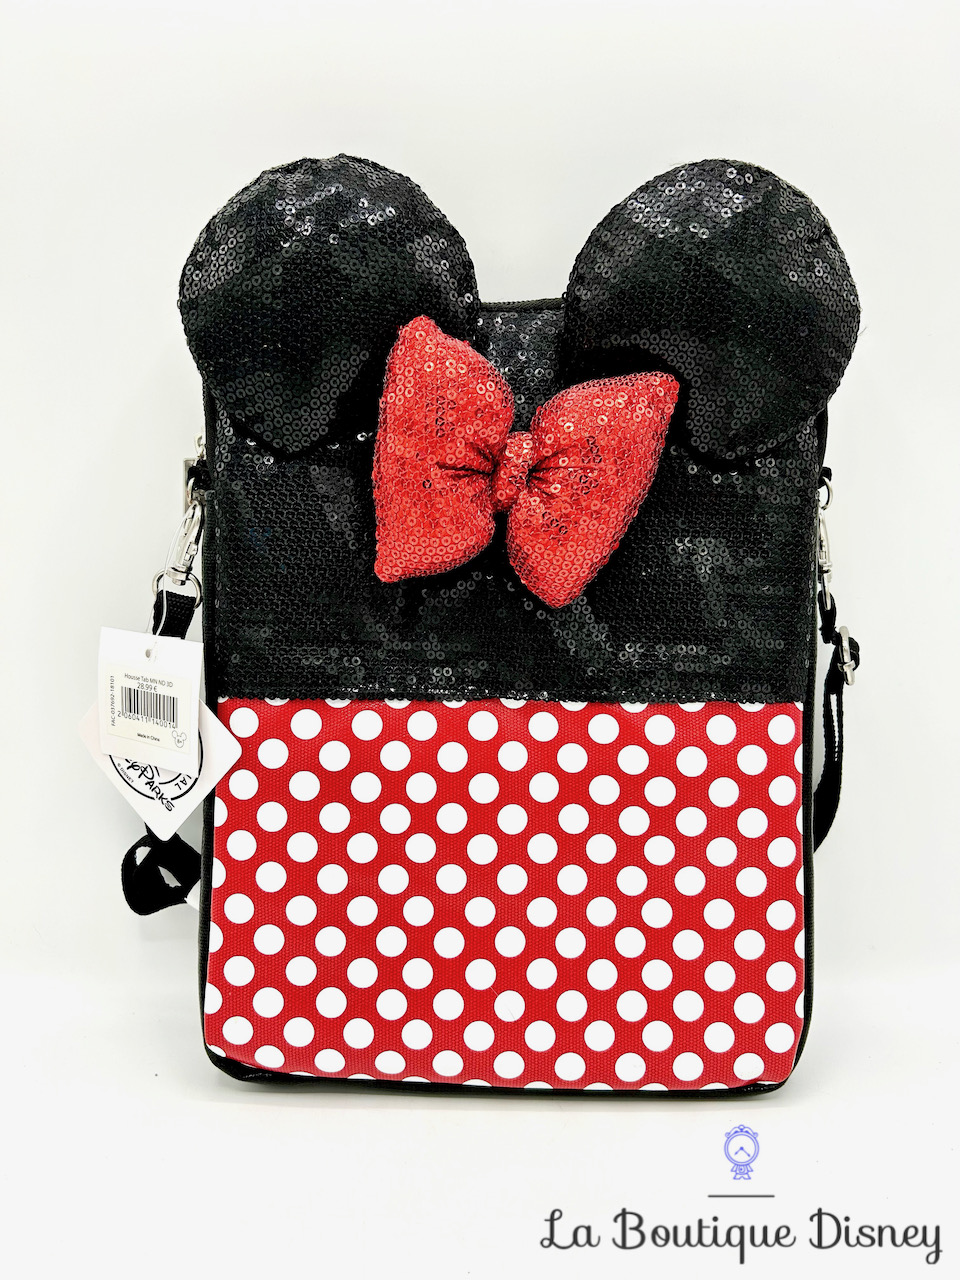 Pochette Minnie Mouse Sequins Disney Parks 2018 Disneyland sac bandoulière housse tablette